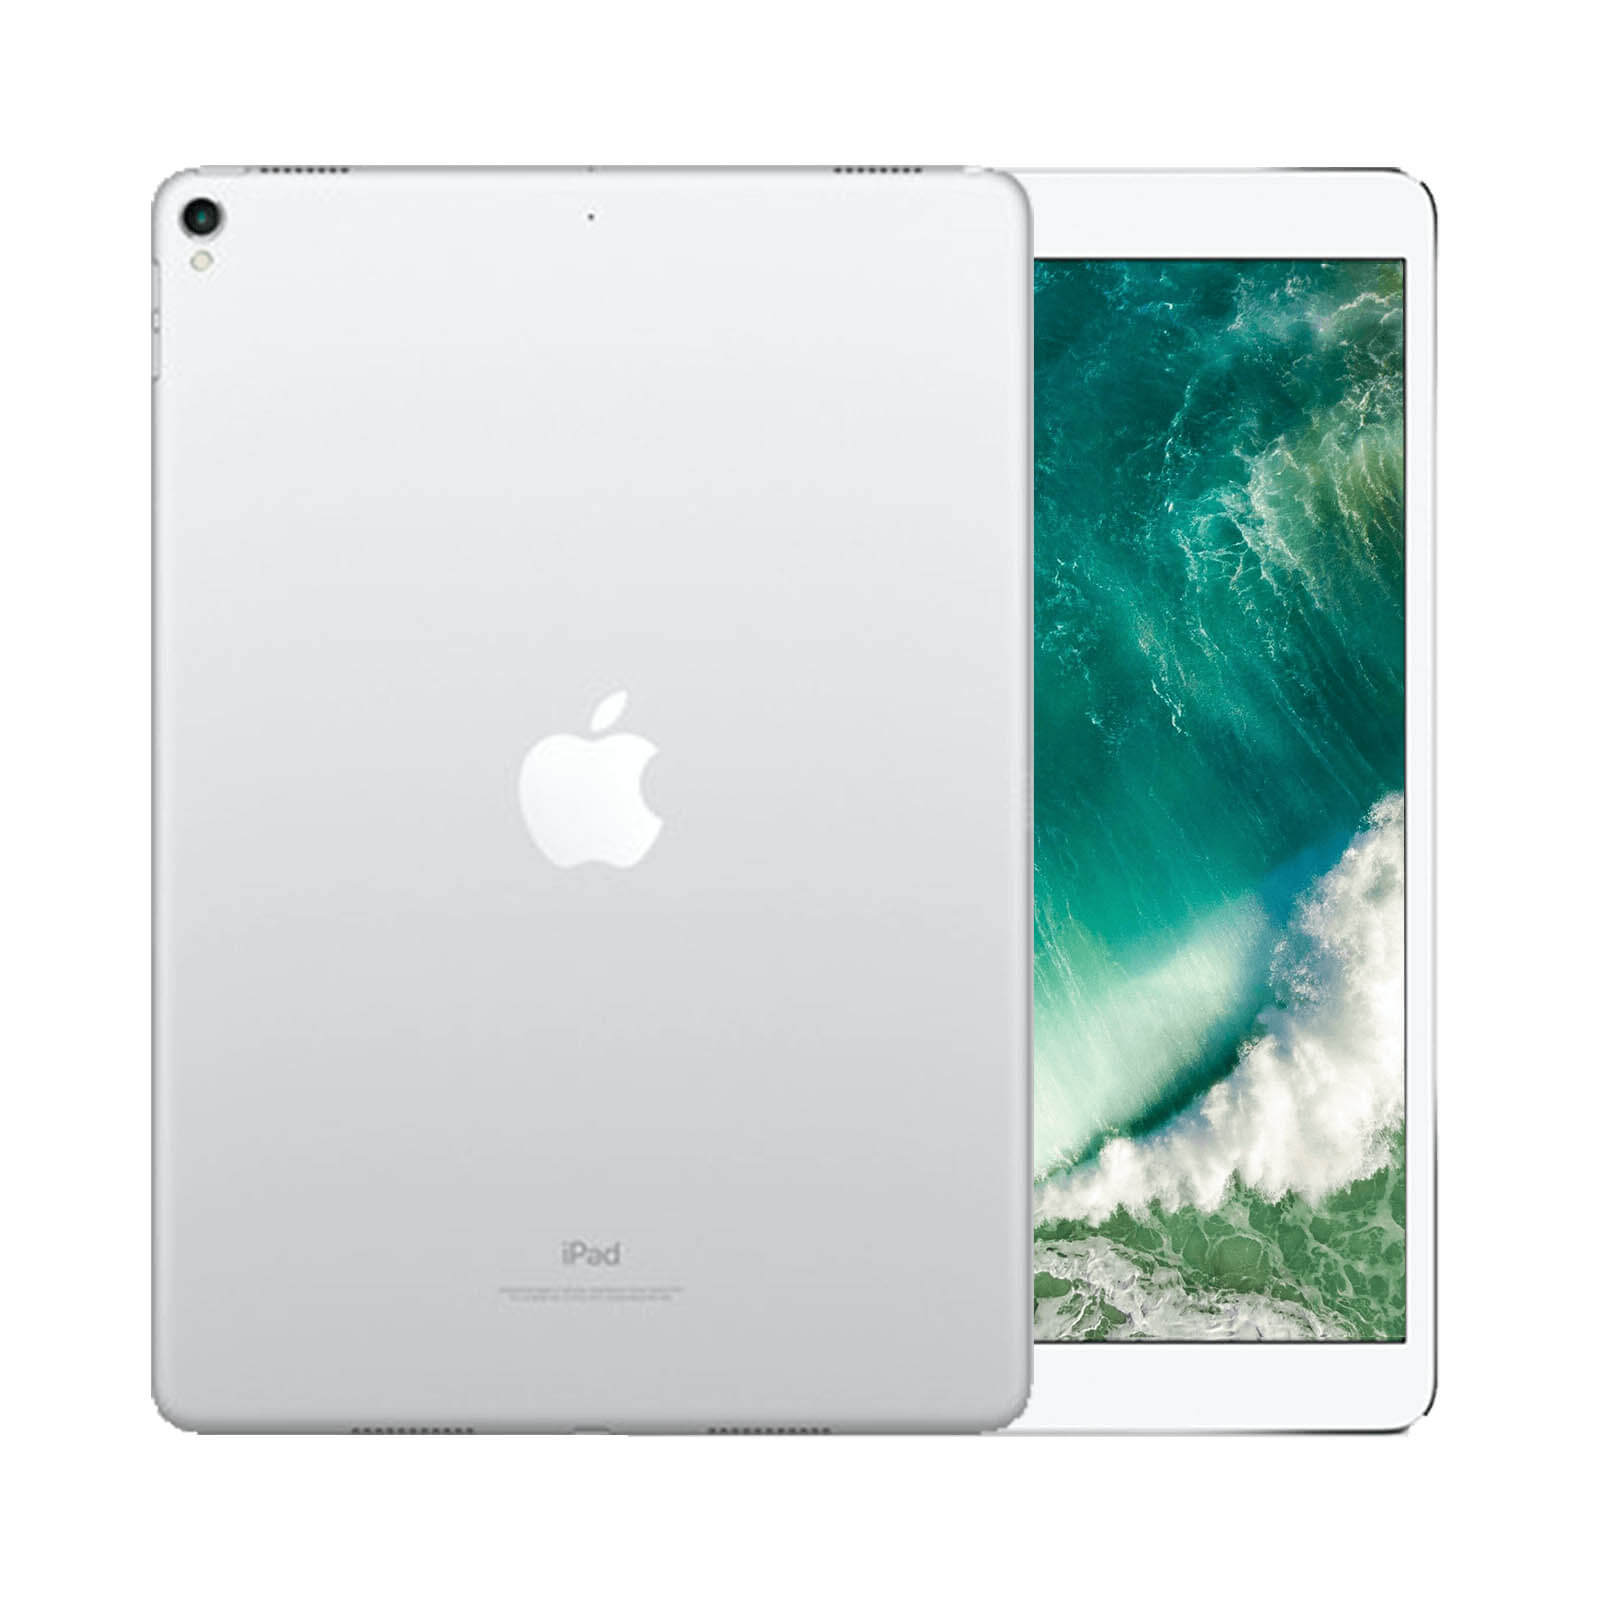 iPad Pro 11 Inch 256GB Silver Very Good - WiFi